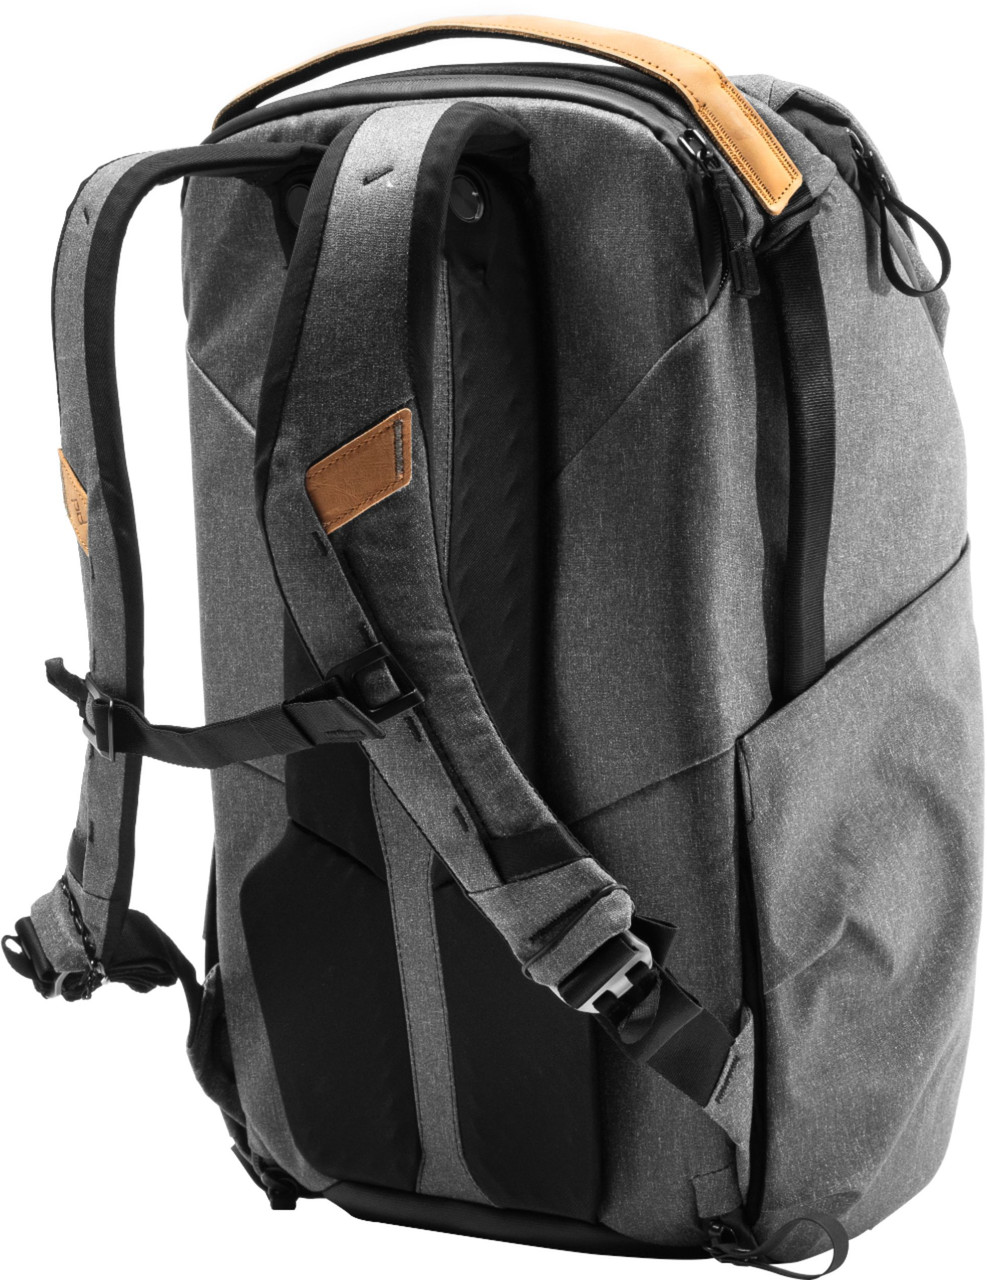 Peak Design - Everyday Backpack V2 30L - Charcoal